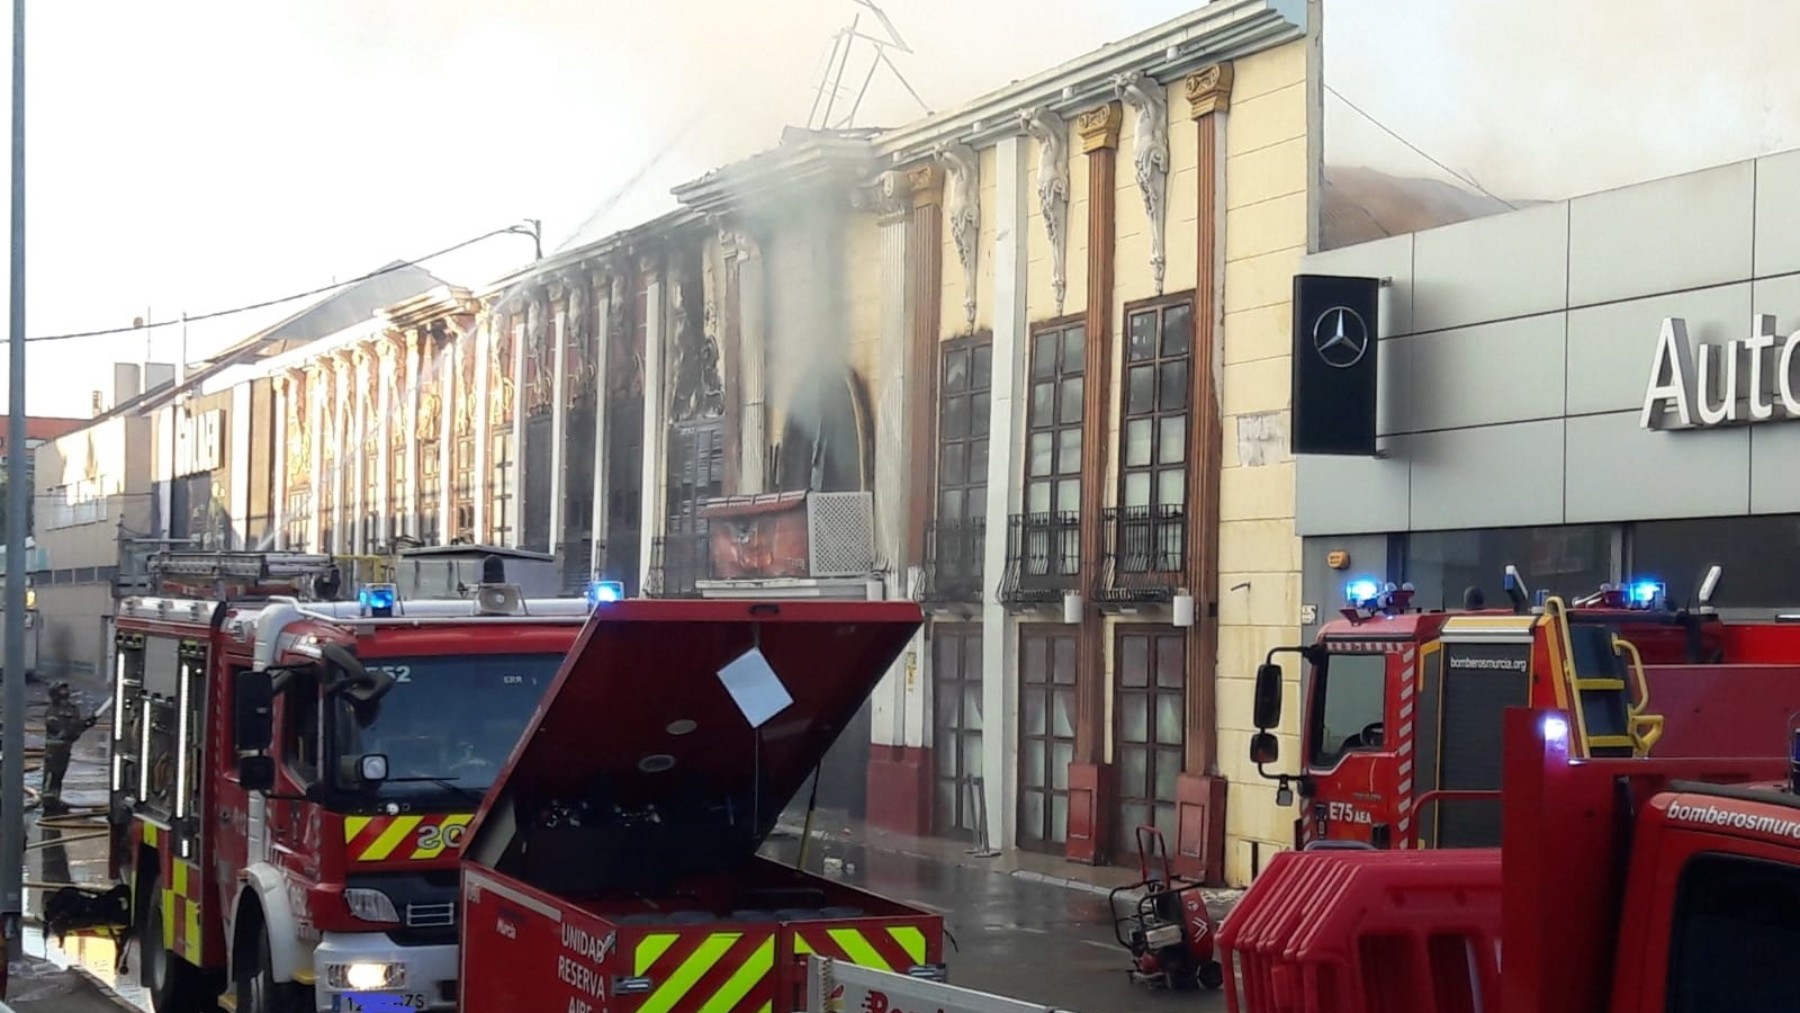 Imagen de la fachada de la discoteca tras el incendio